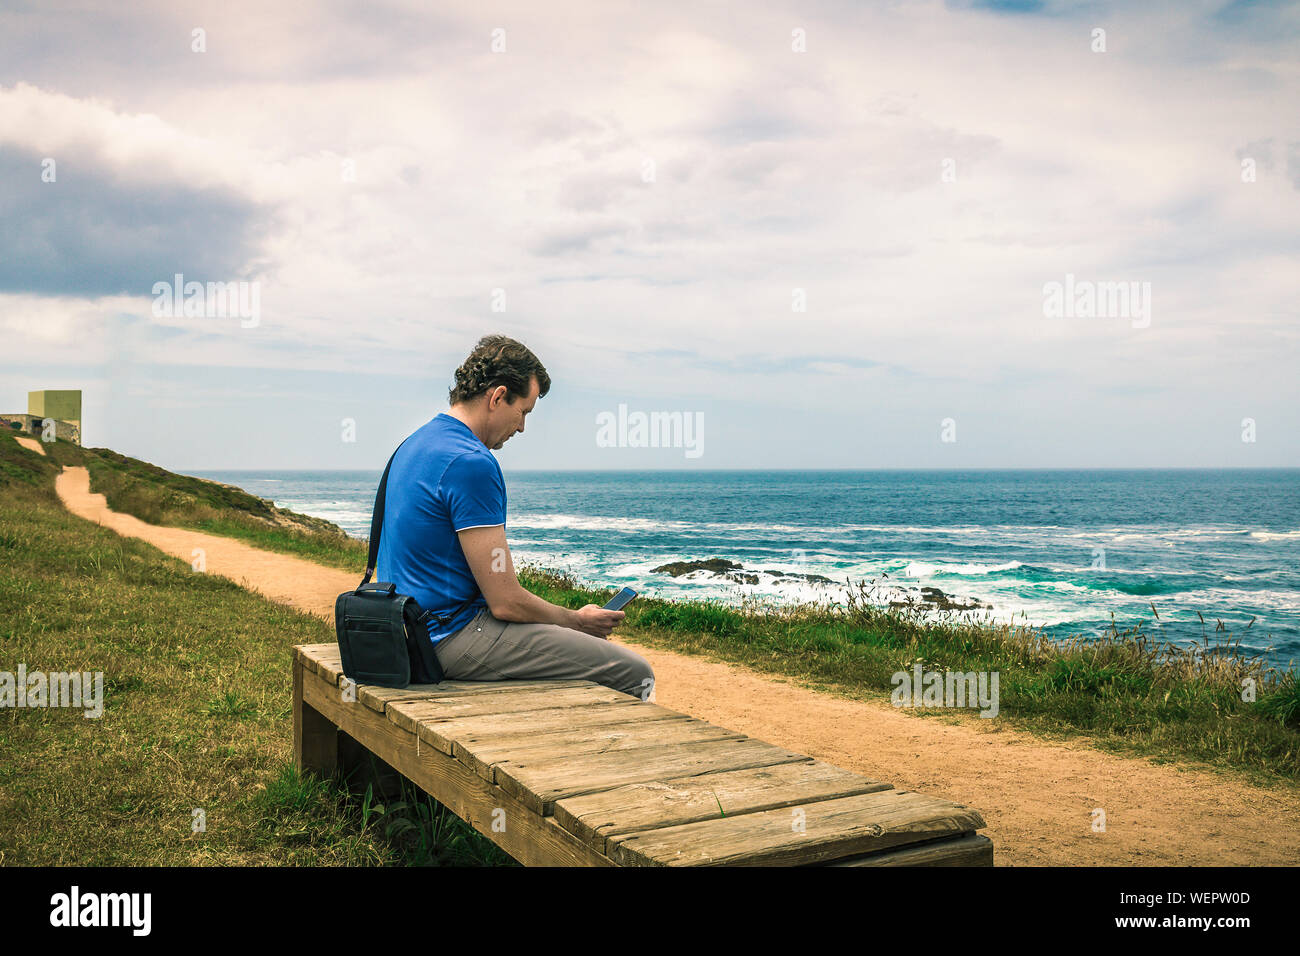 Homme avec chemise bleue assis sur un banc en bois en regardant son téléphone intelligent face à la mer Banque D'Images